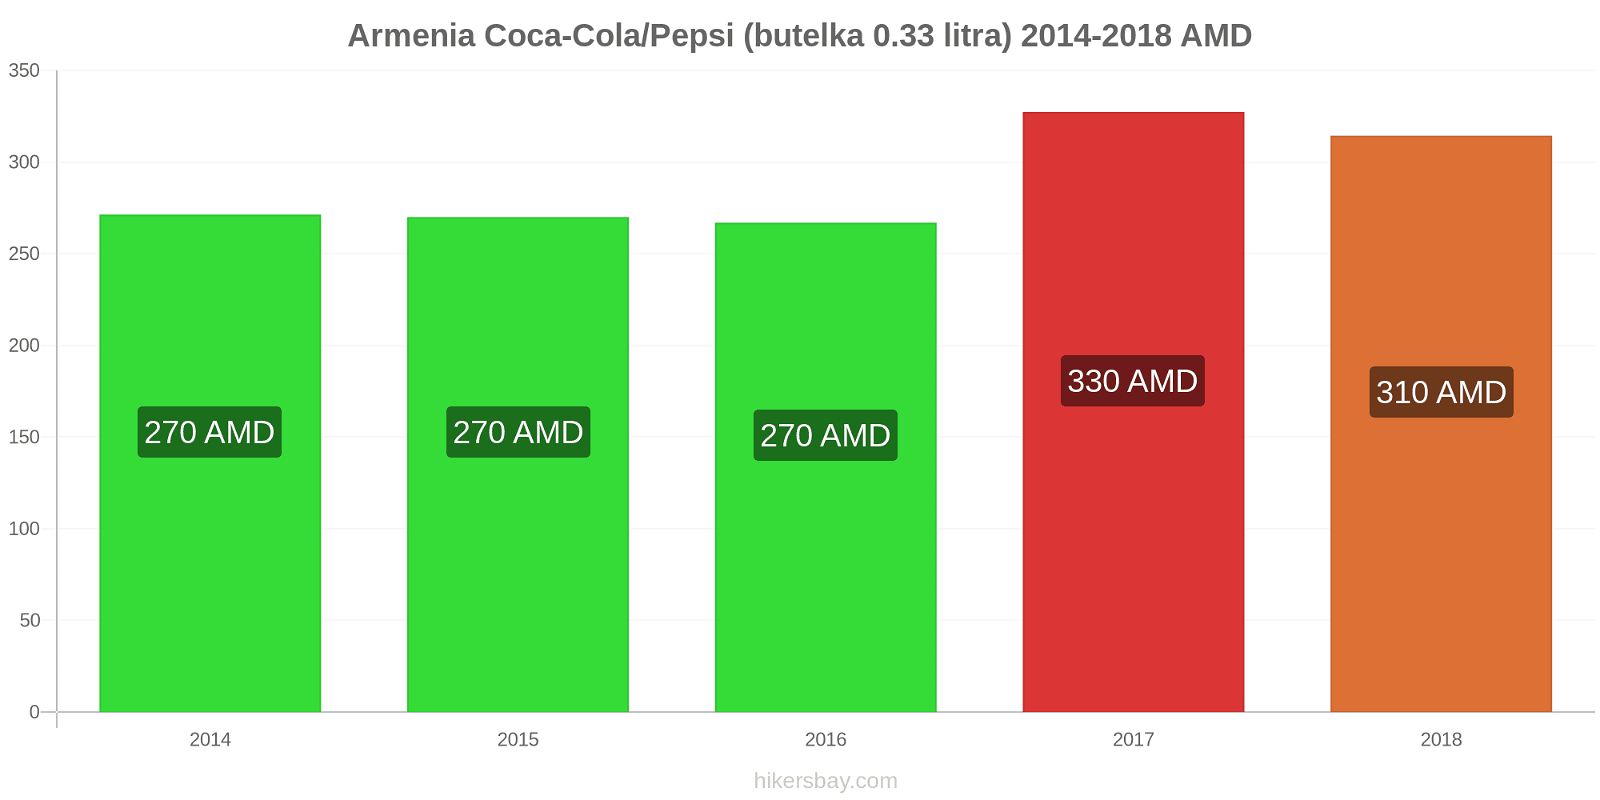 Armenia zmiany cen Coca-Cola/Pepsi (butelka 0.33 litra) hikersbay.com